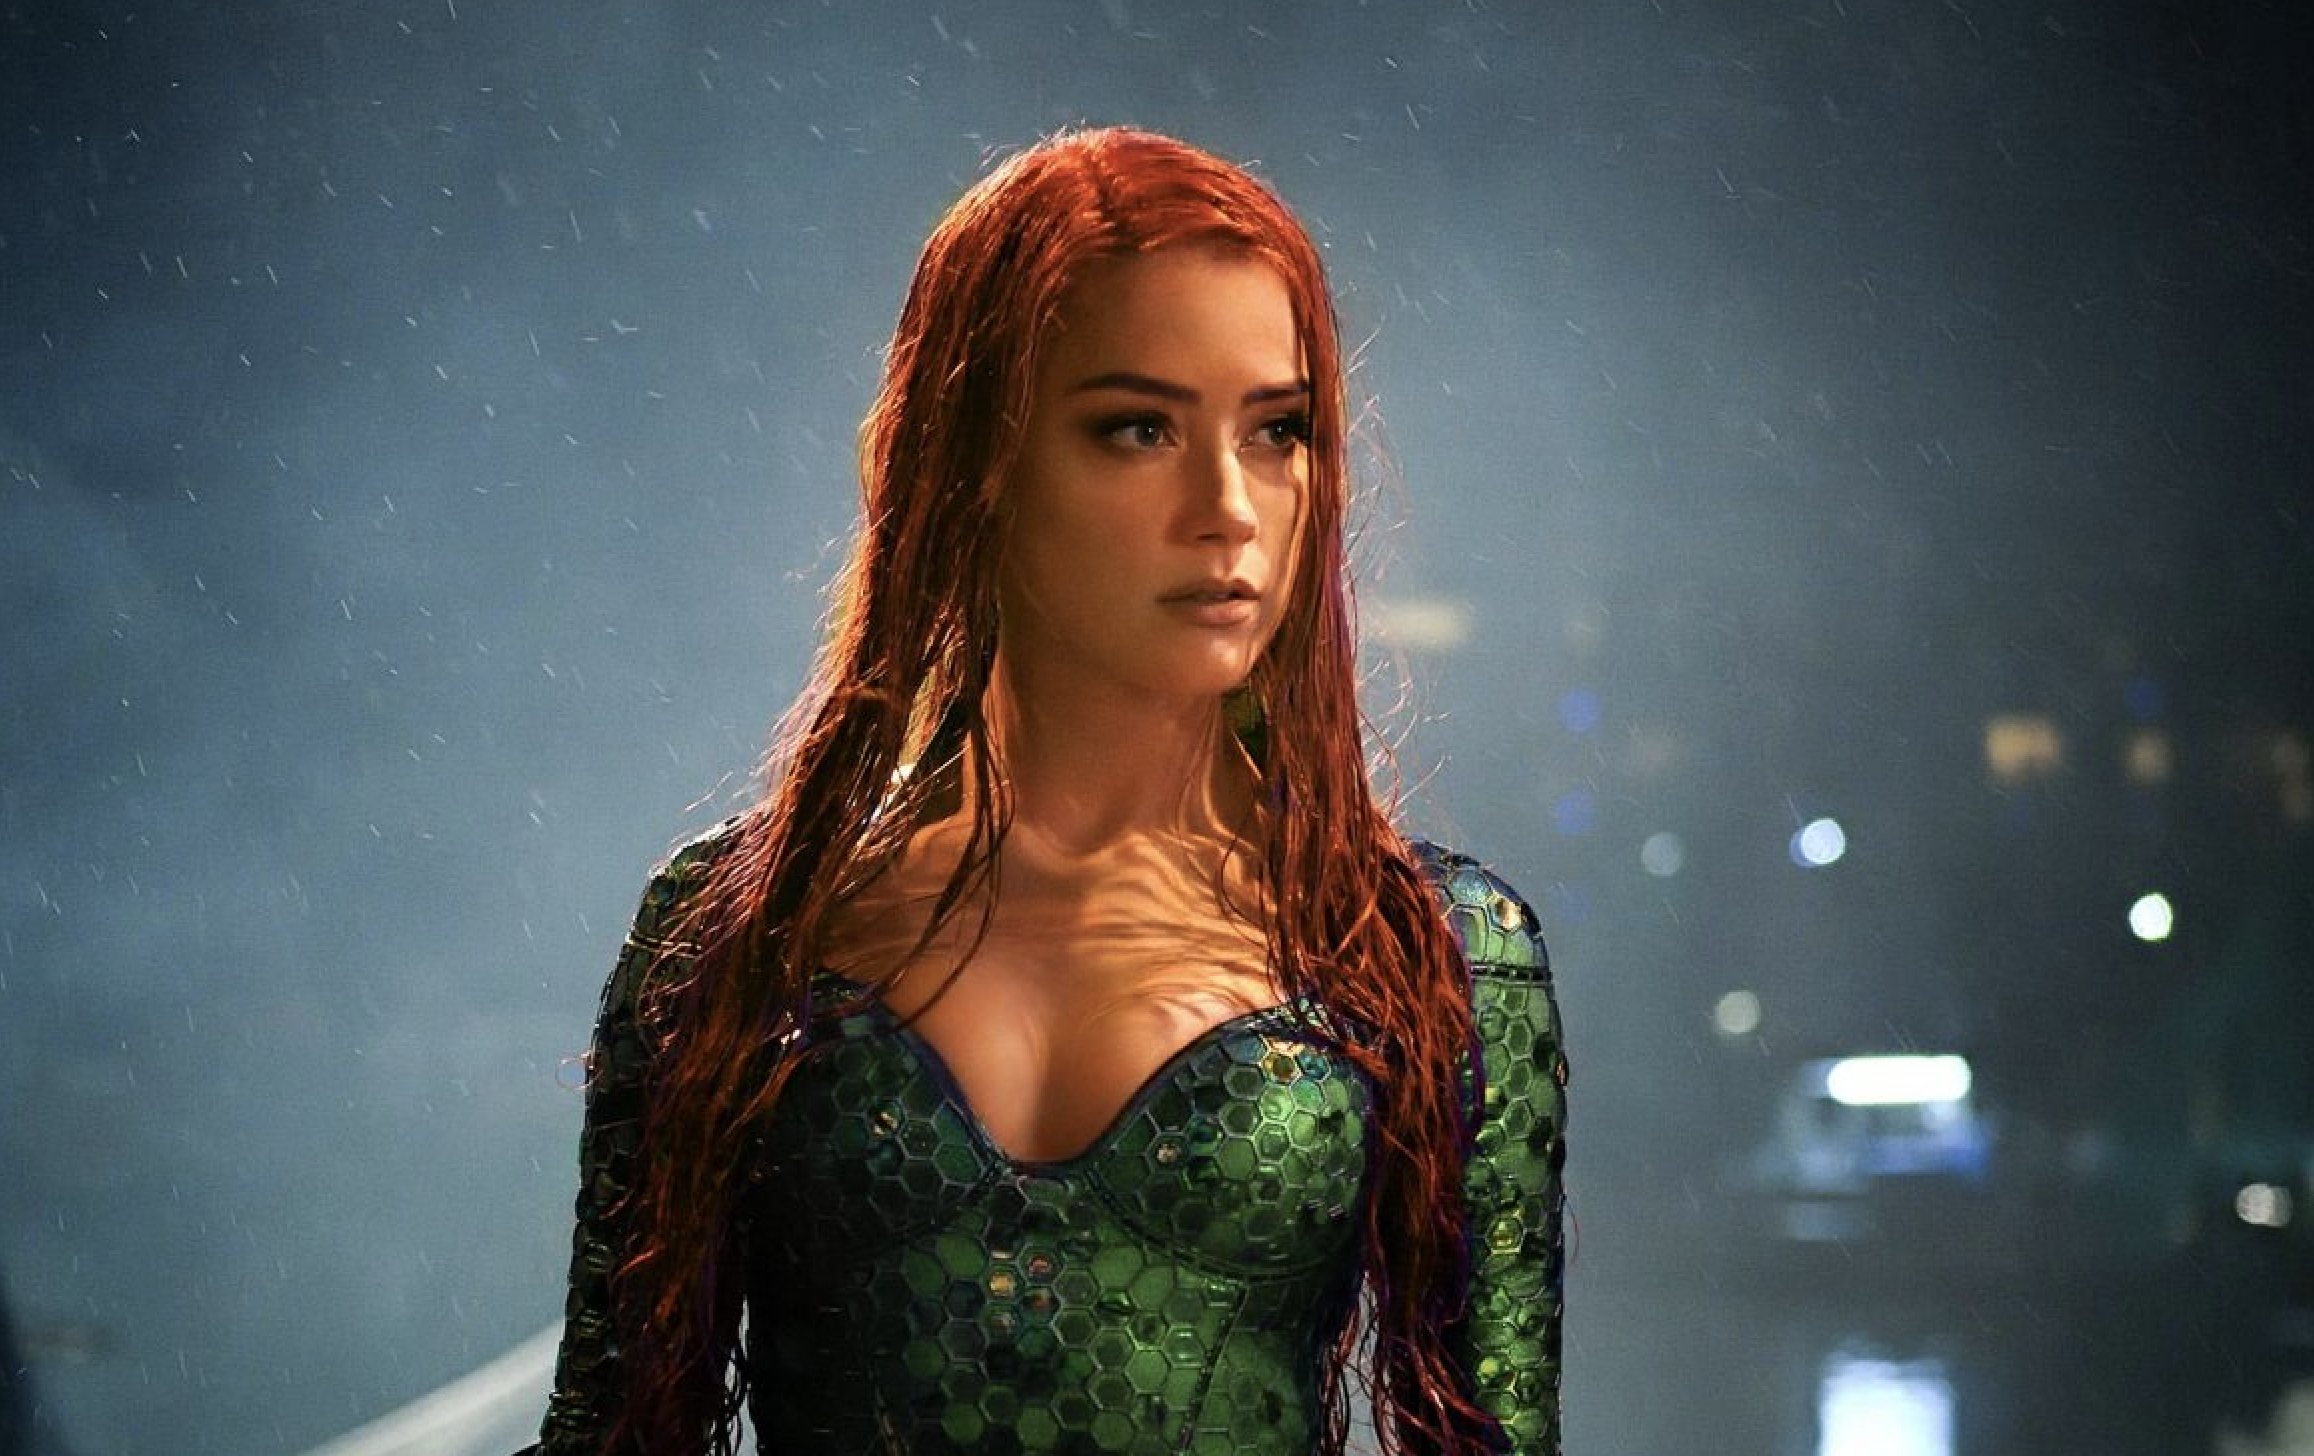 Lanzan petición para eliminar a Amber Heard de “Aquaman 2” después de la salida de Johnny Depp de “Animales Fantásticos»